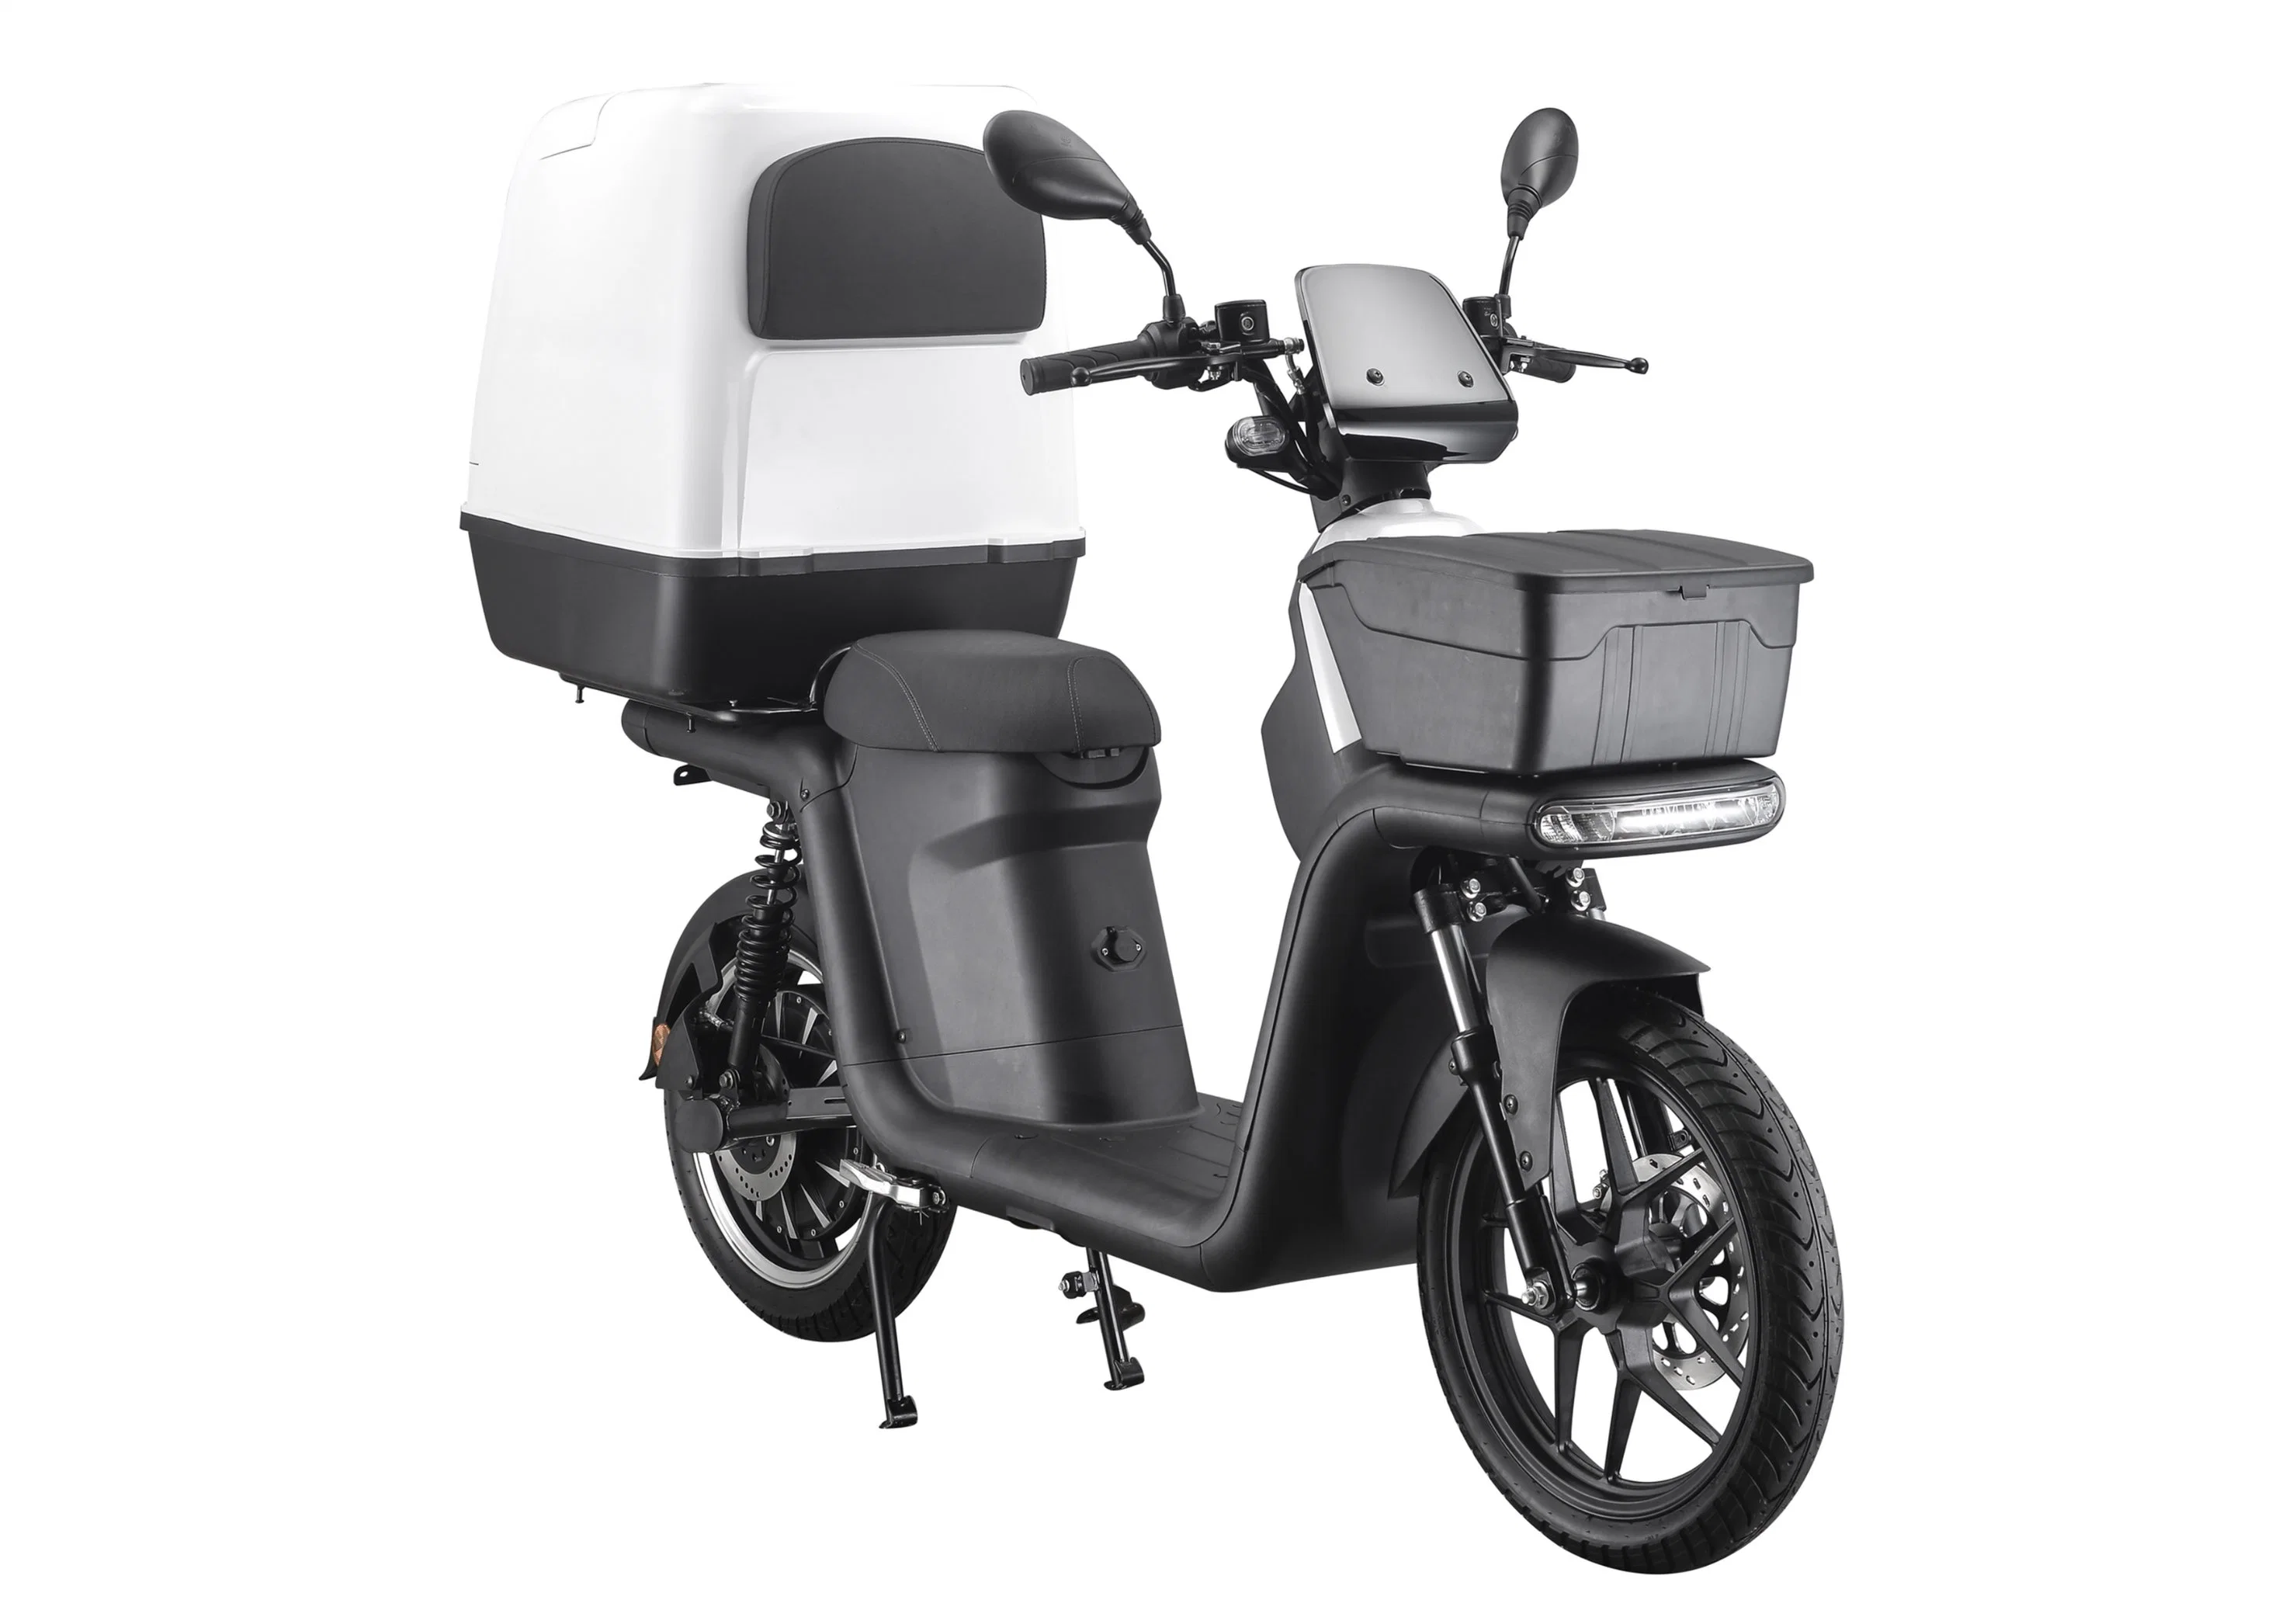 60V Adulto batería extraíble Electric Dirt Bike, pedal eléctrico motocicleta entrega Eléctrica Scooter con EEC